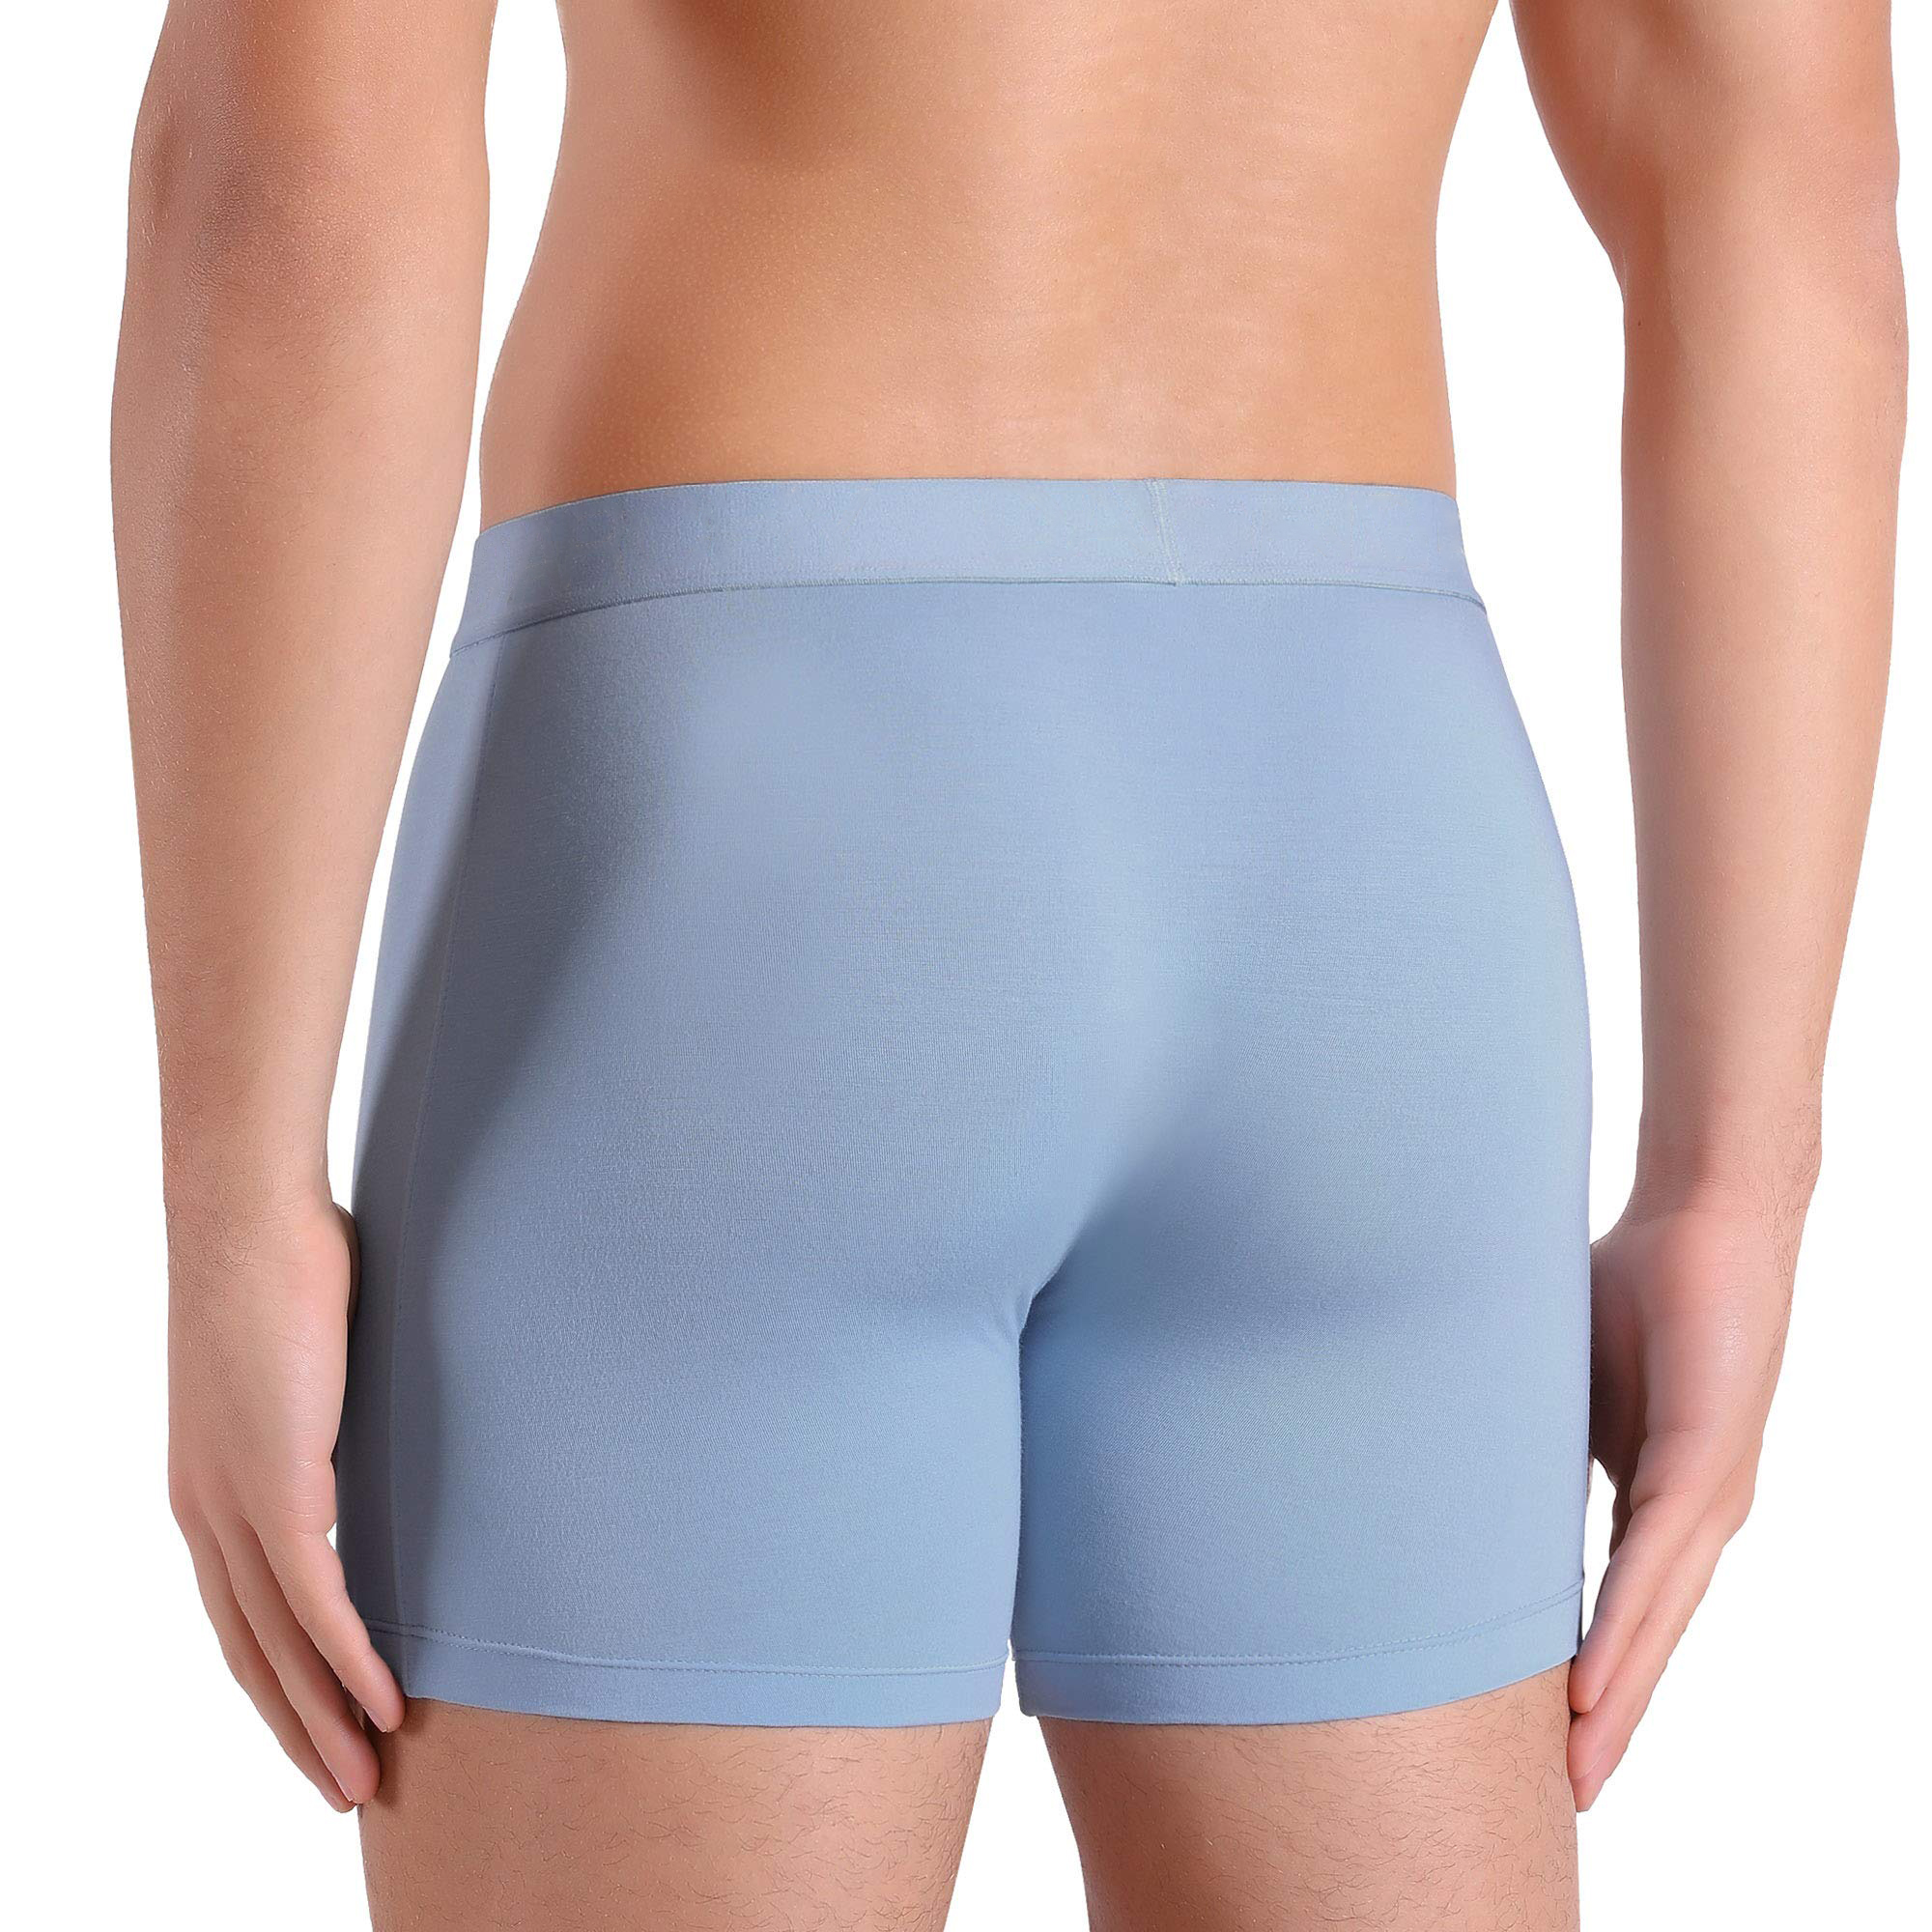 Men's Underwear (14)